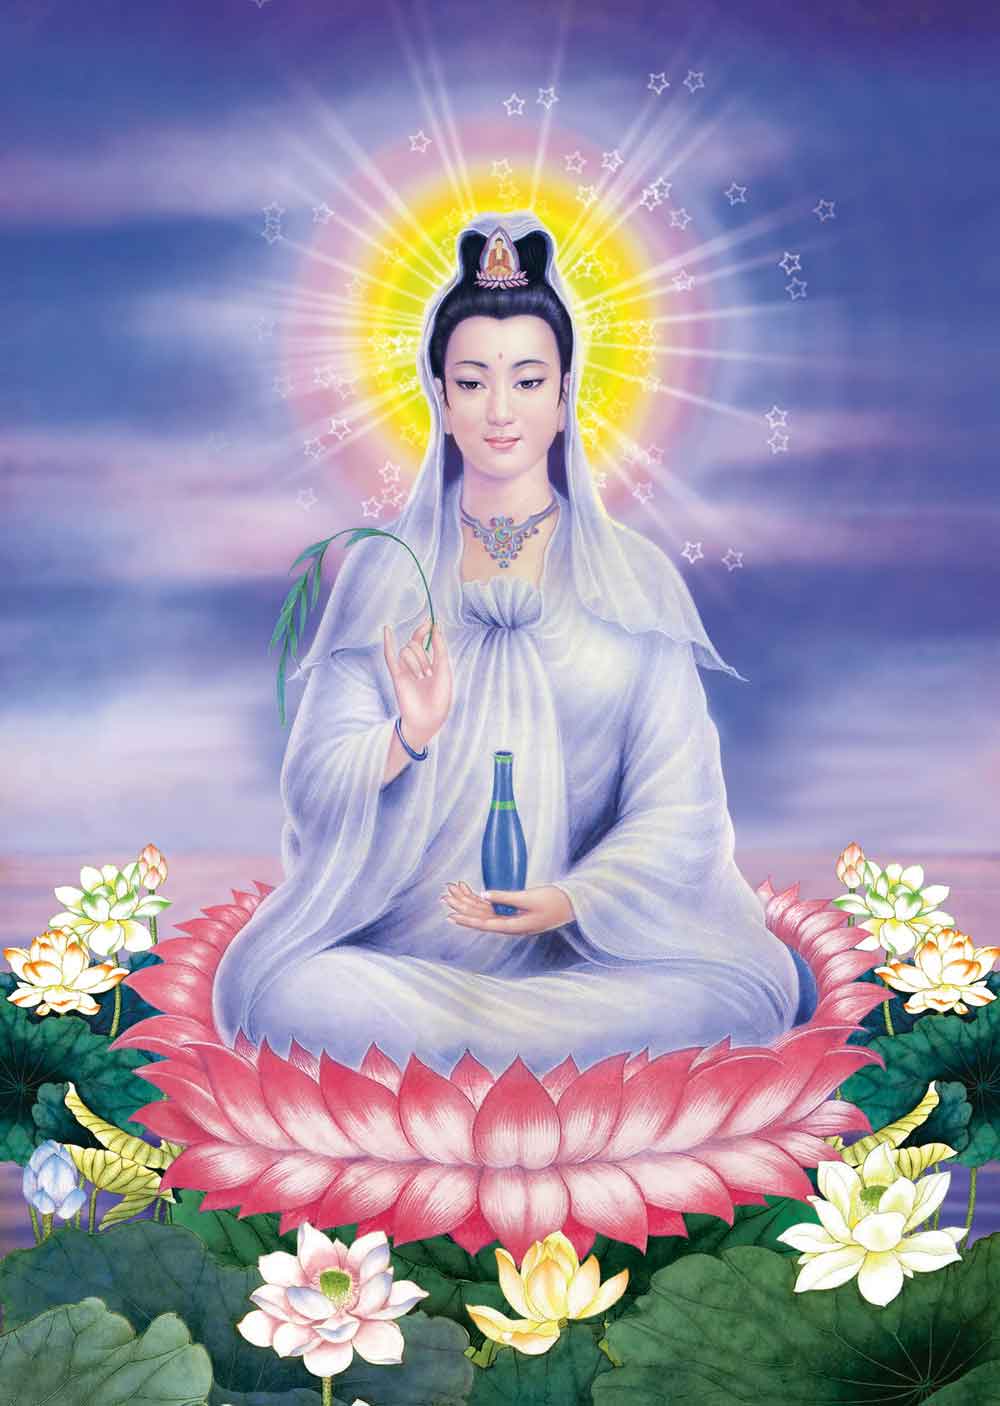 Bồ Tát Quán Thế Âm: Bồ Tát Quán Thế Âm là một vị thần rất được yêu mến trong đạo Phật. Xem ảnh liên quan đến Bồ Tát Quán Thế Âm và bạn sẽ hiểu rõ hơn về sự bao dung, từ bi và lòng nhân ái của vị thần này.